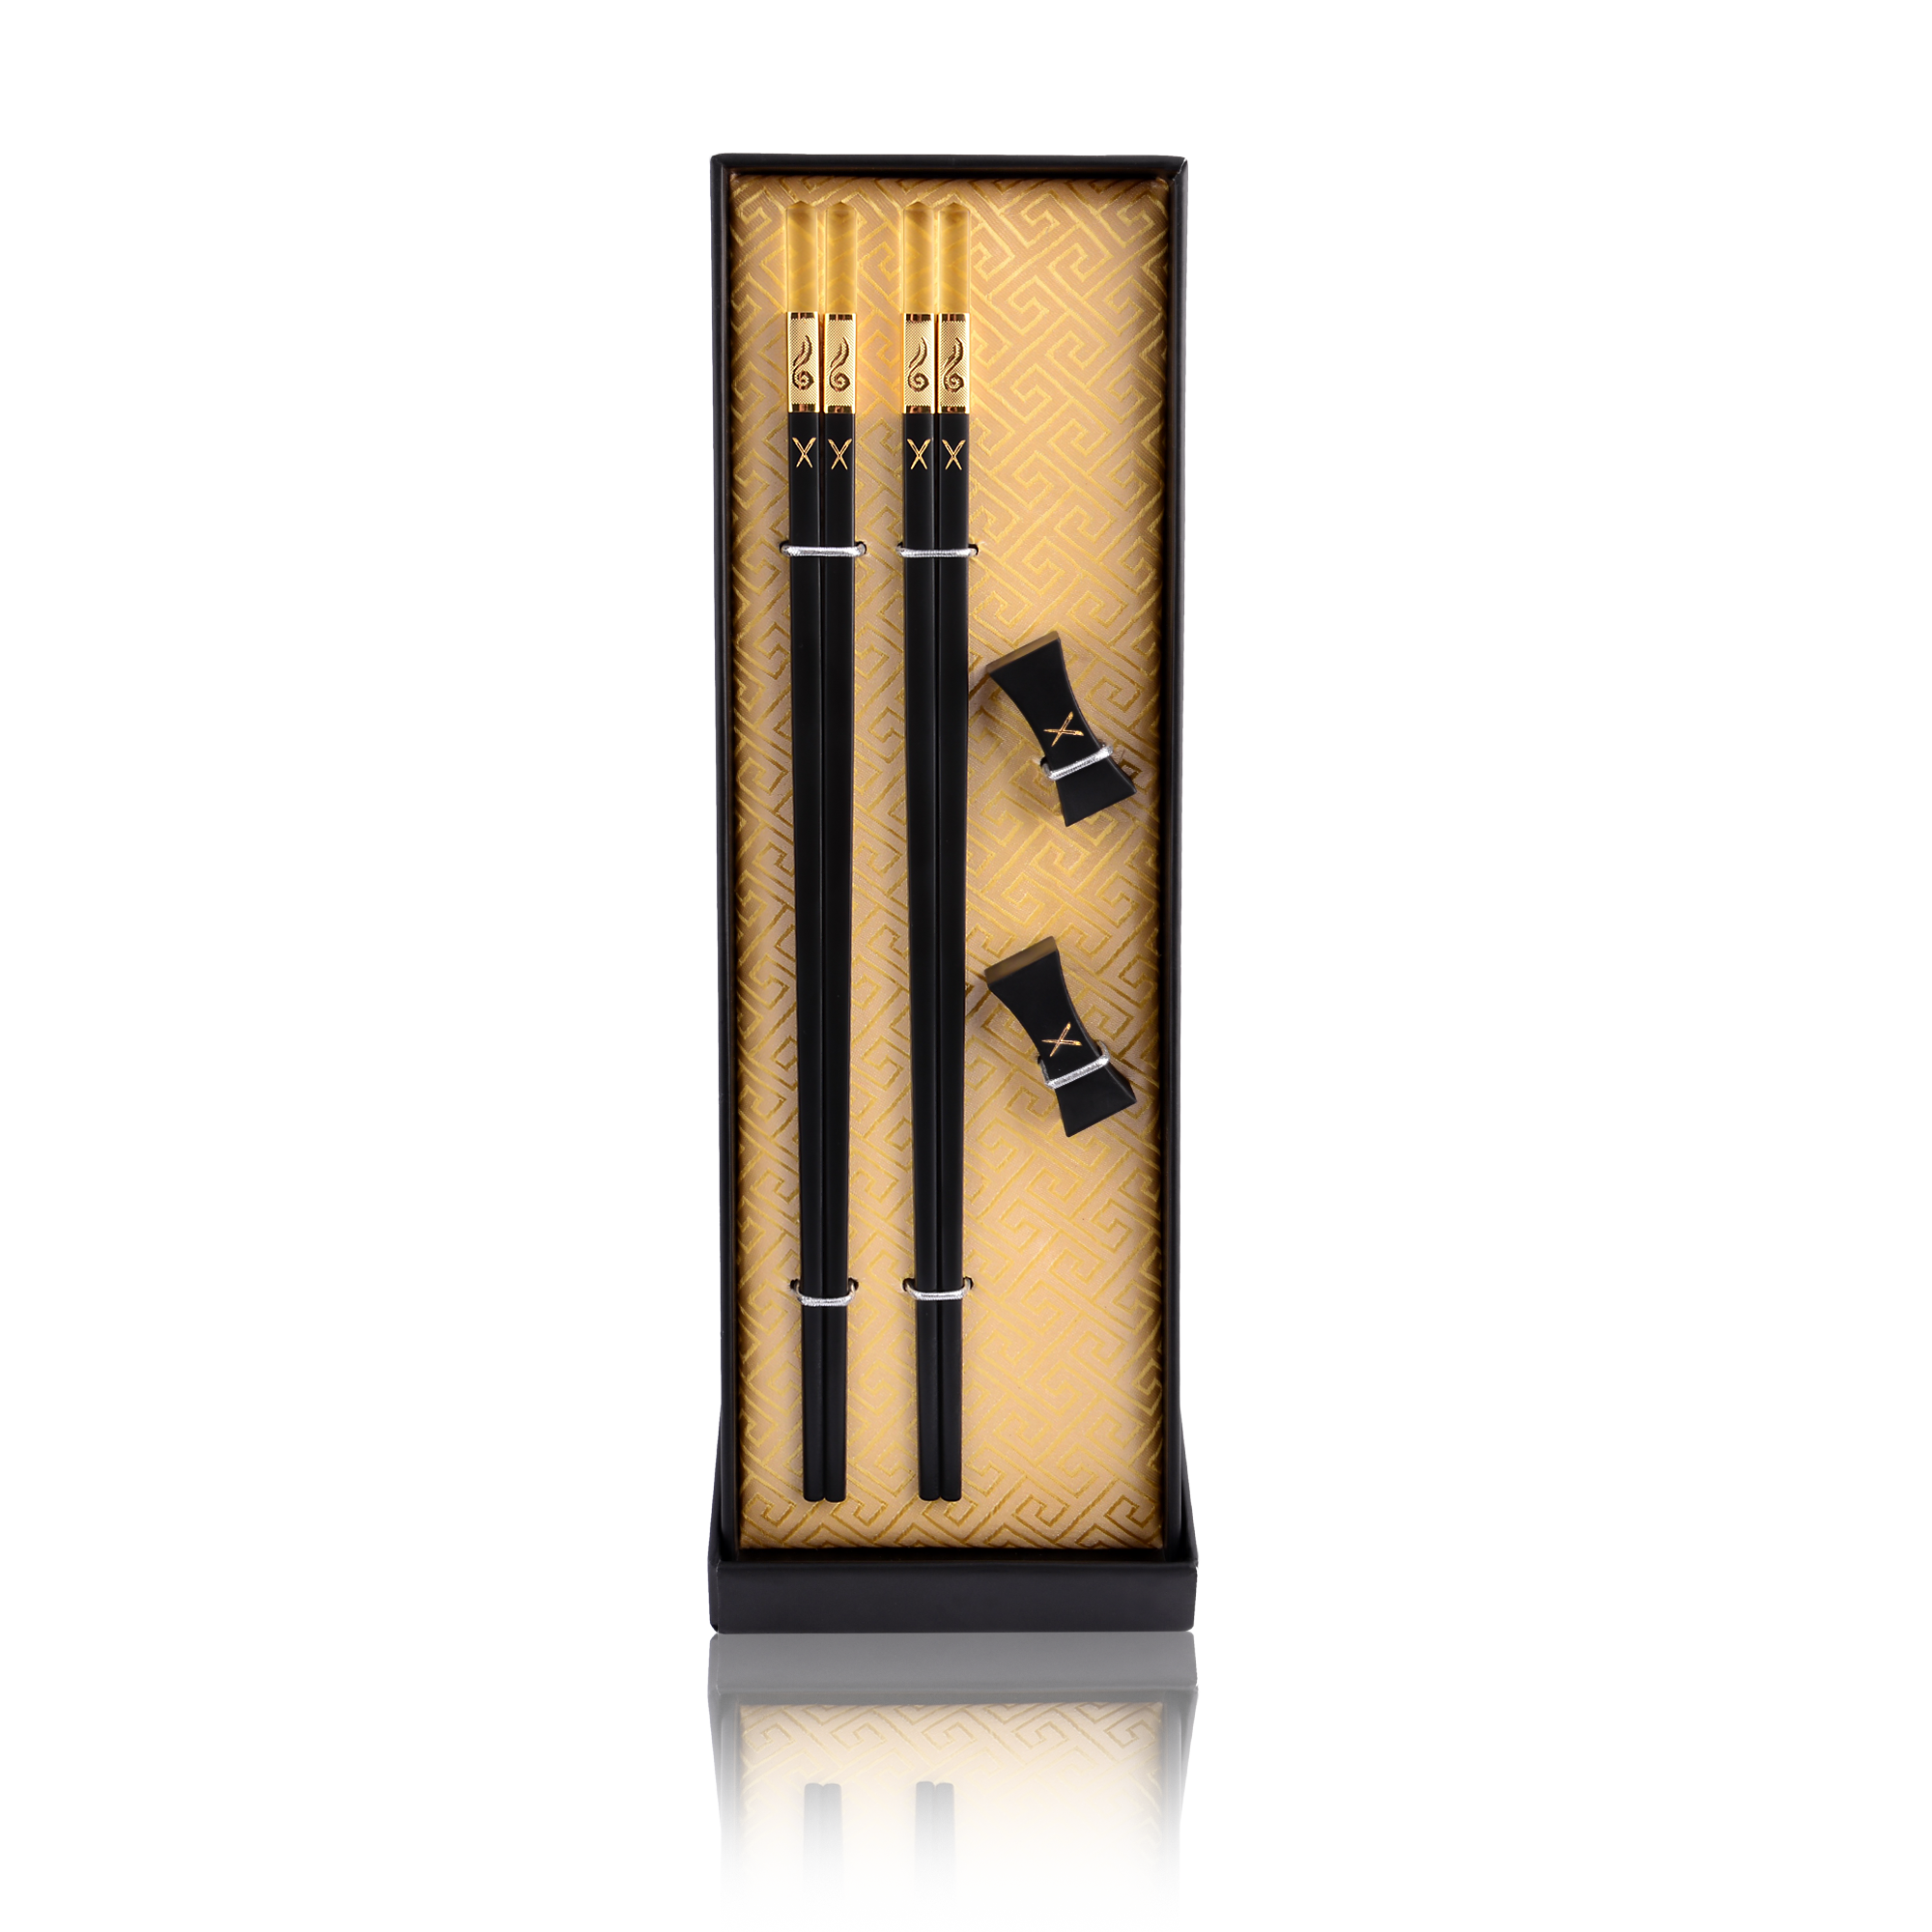 Shop Igneous Chopsticks and Golden Chopsticks at Best Price - LuxSticks